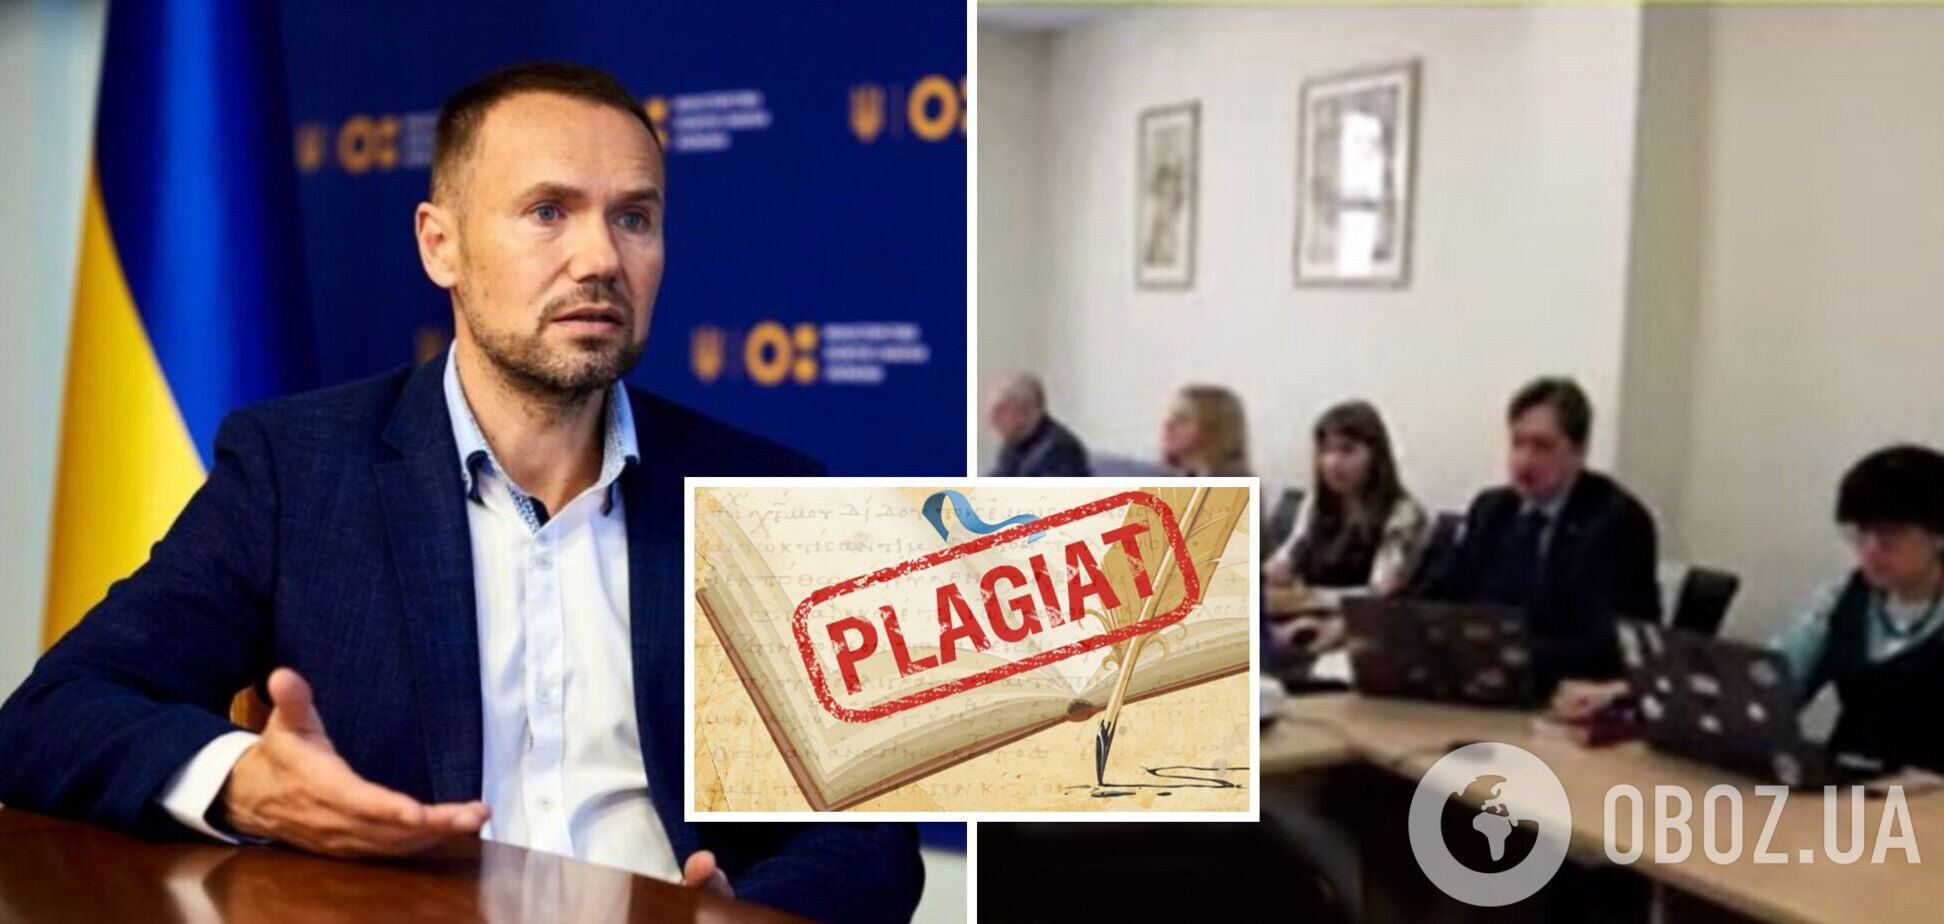 Экс-министра образования Шкарлета могут лишить научных званий: в его диссертации признали плагиат